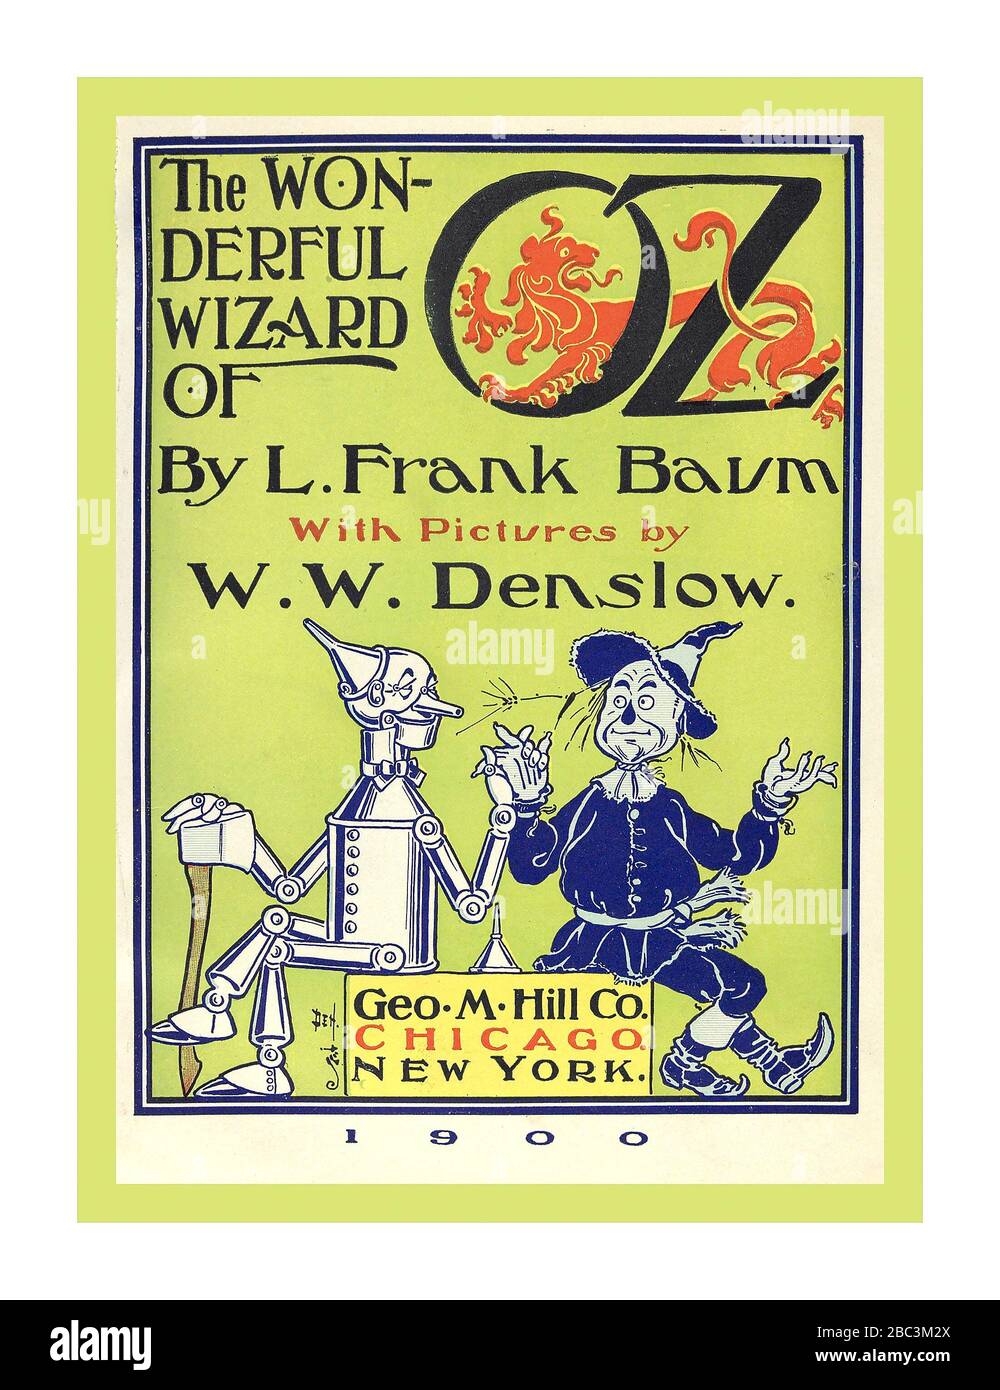 WIZARD OF OZ couverture intérieure du livre historique original de 1900 «The Wonderful Wizard of Oz» de l'auteur L. Frank Baum, (Lyman Frank), 1856-1919. Illustration du créateur W. W.Denslow, (William Wallace), 1856-1915, publié Chicago ; New York : G.M. Hill Co Banque D'Images